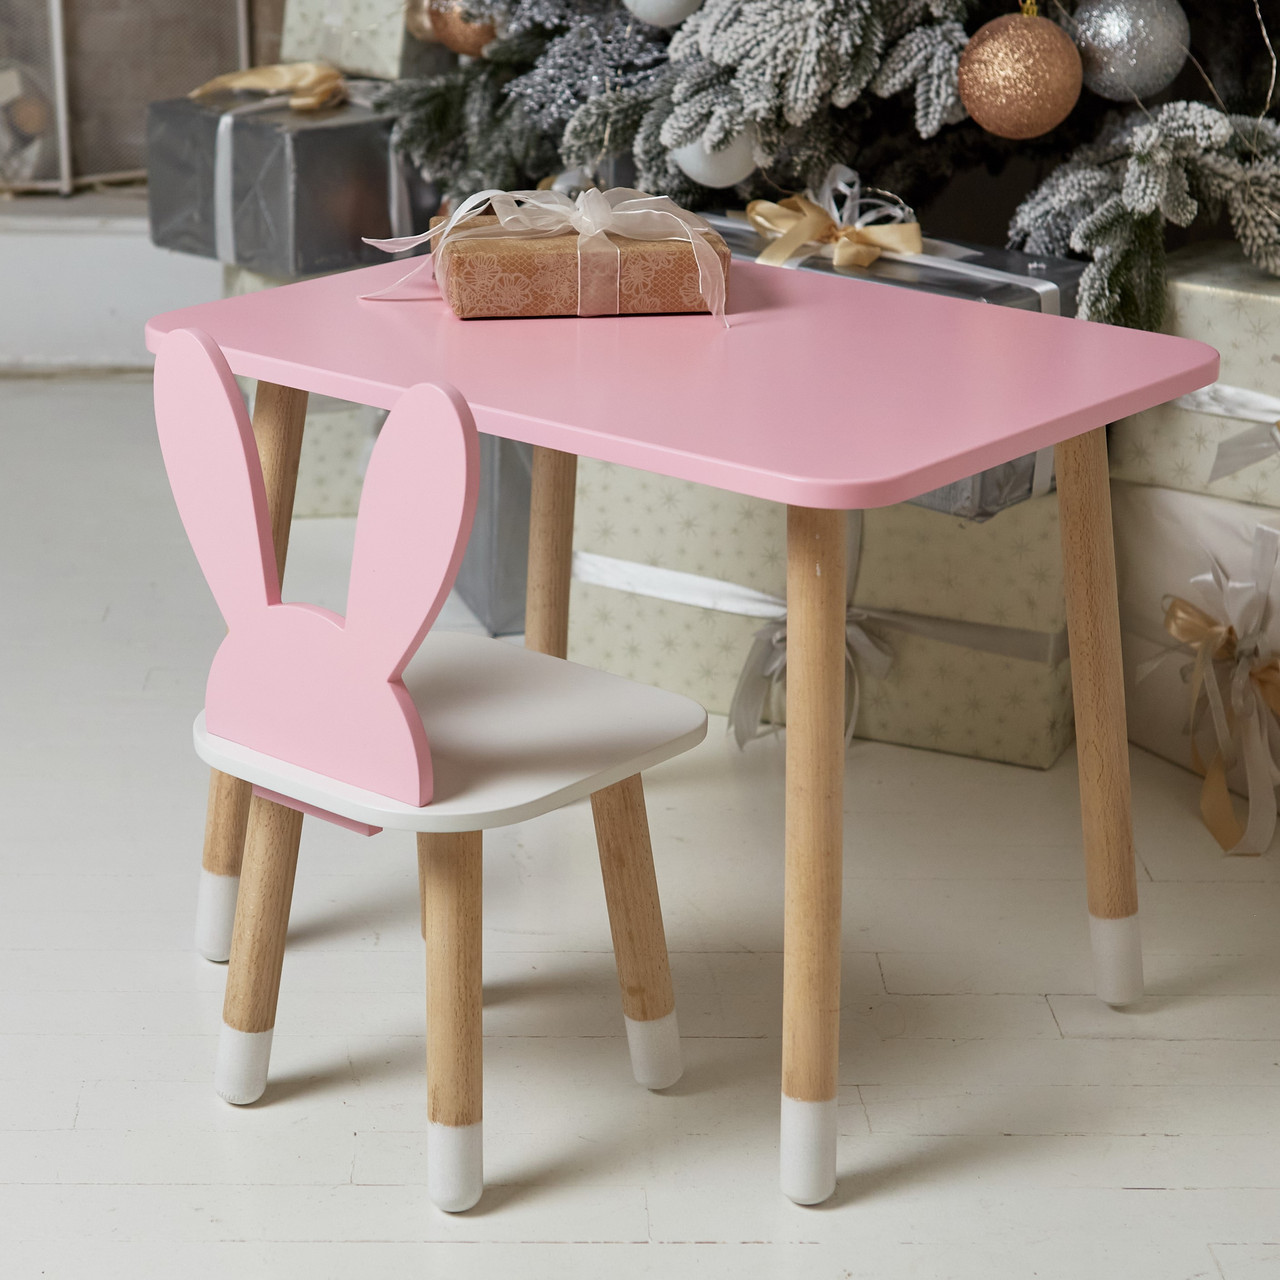 Рожевий прямокутний стіл і стільчик дитячий зайчик з білим сидінням. Рожевий дитячий столик, фото 1